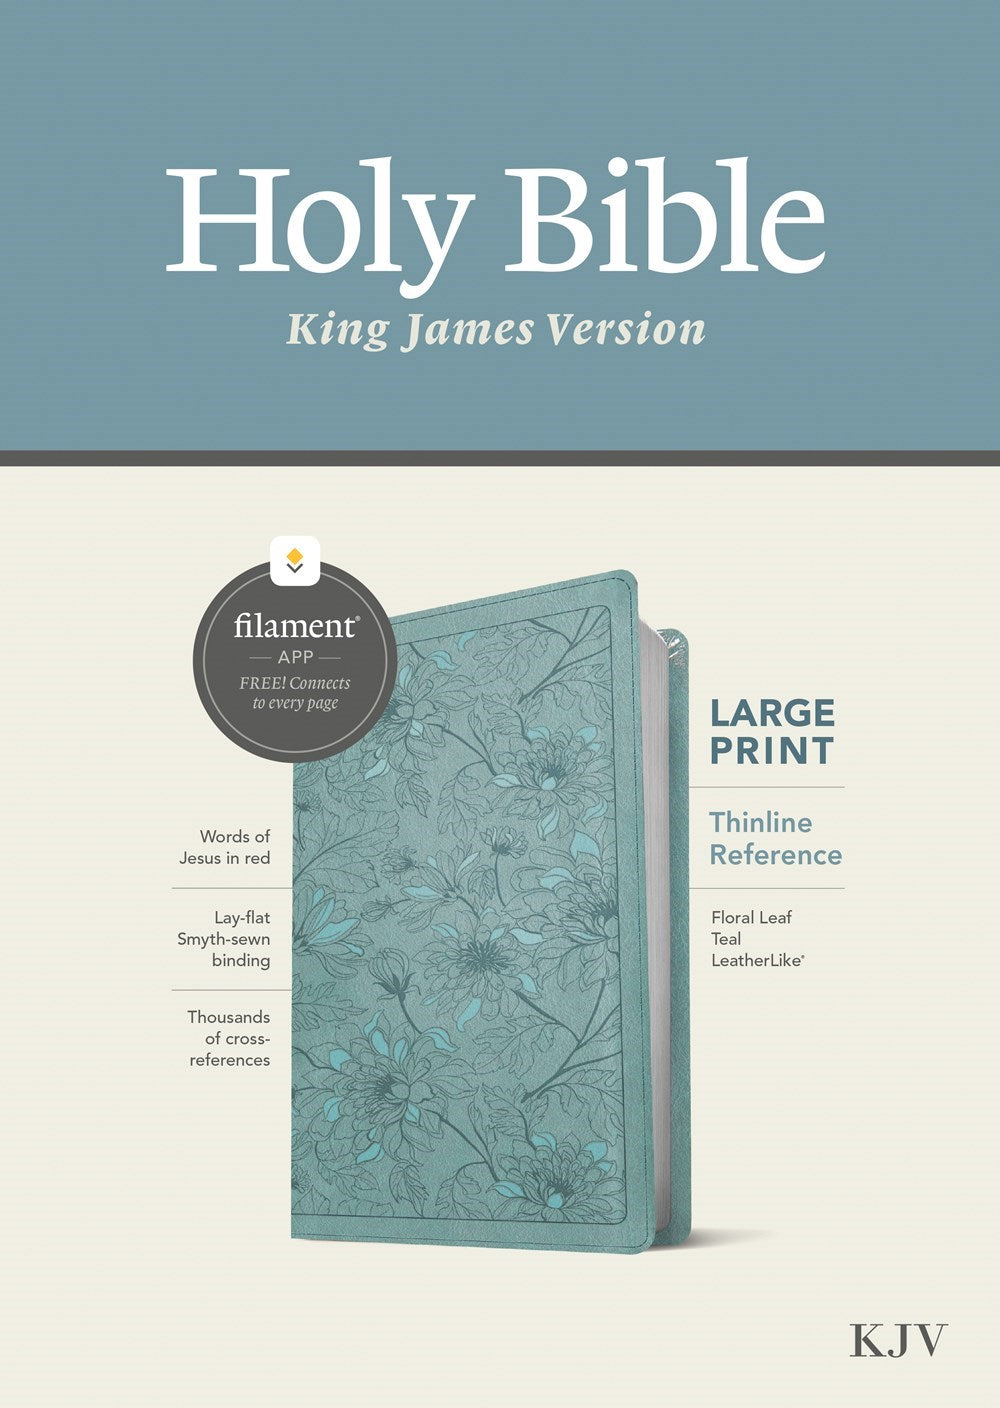 KJV Large Print Thinline Reference Bible/Filament Enabled Edition-Floral Leaf Teal LeatherLike